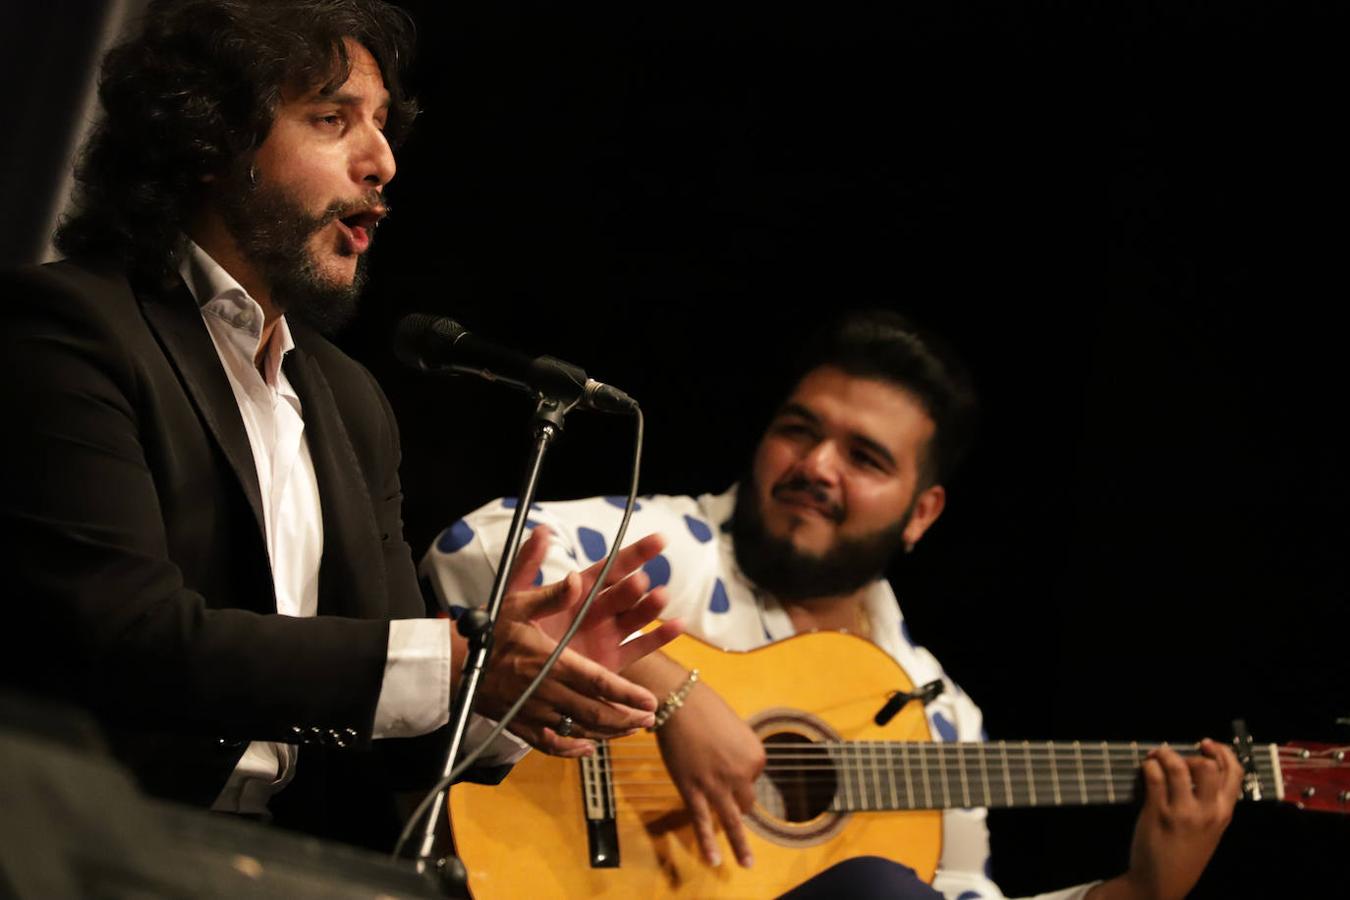 El cantaor Antonio Reyes encandiló al público con su estilo diferente.